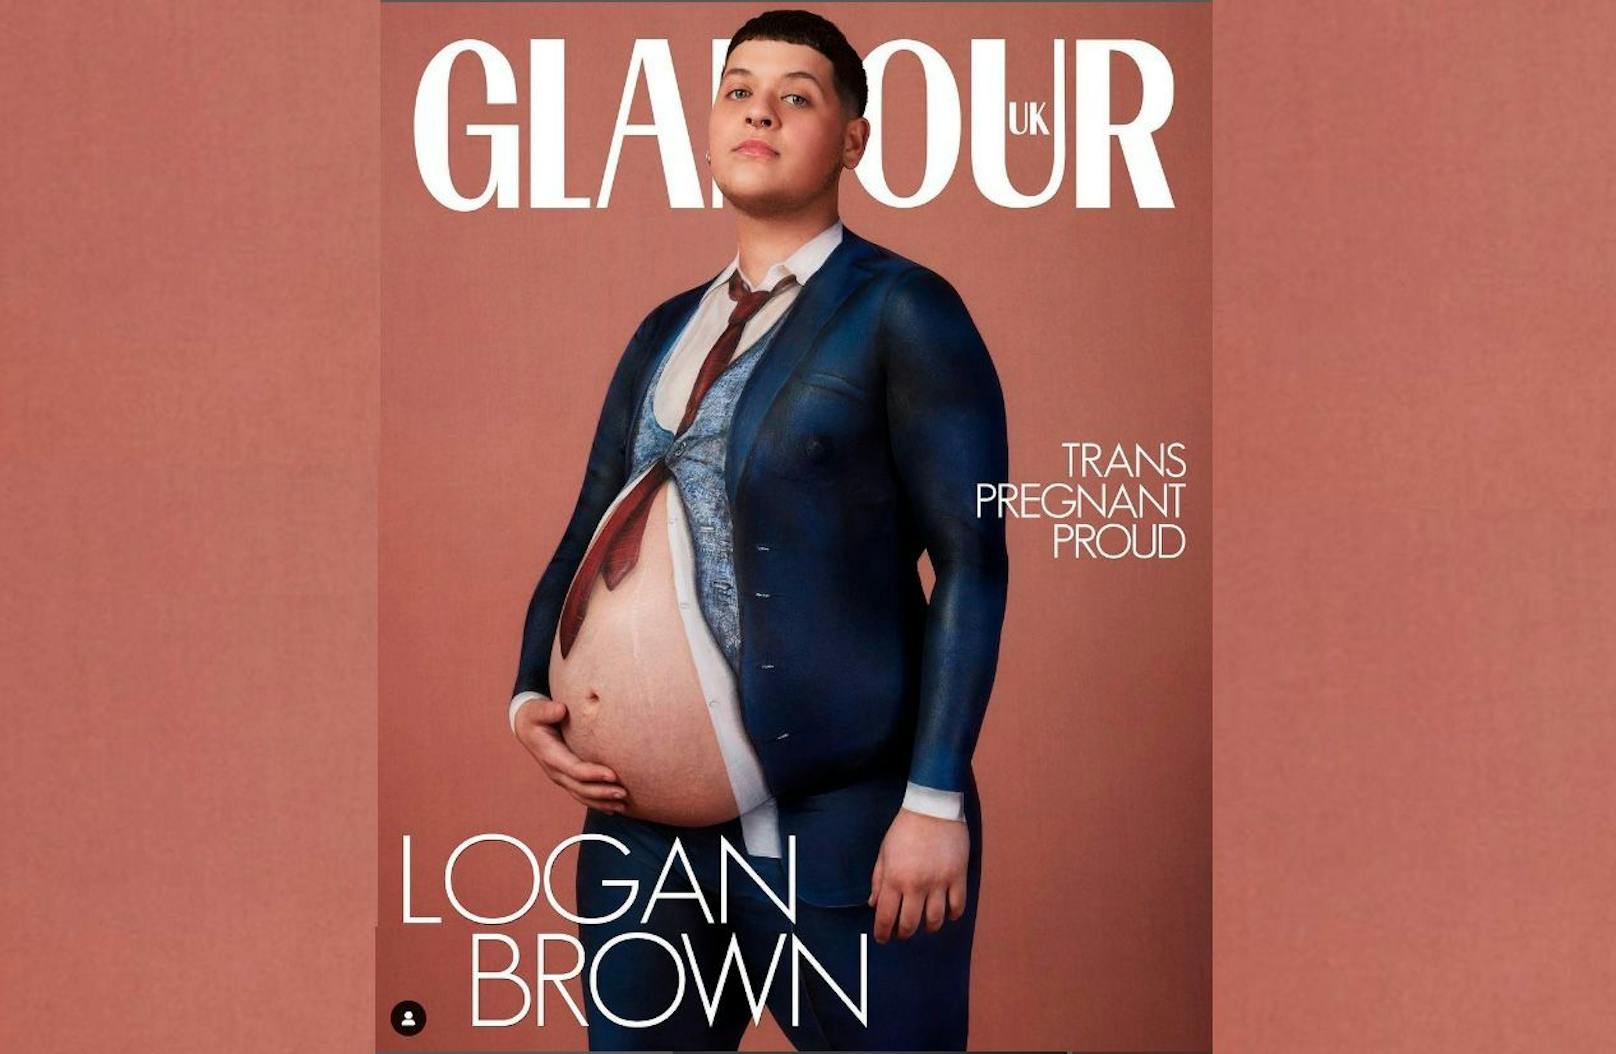 Logan Brown zeigt sich am neuesten Cover der britischen "Glamour" mit Babybauch.